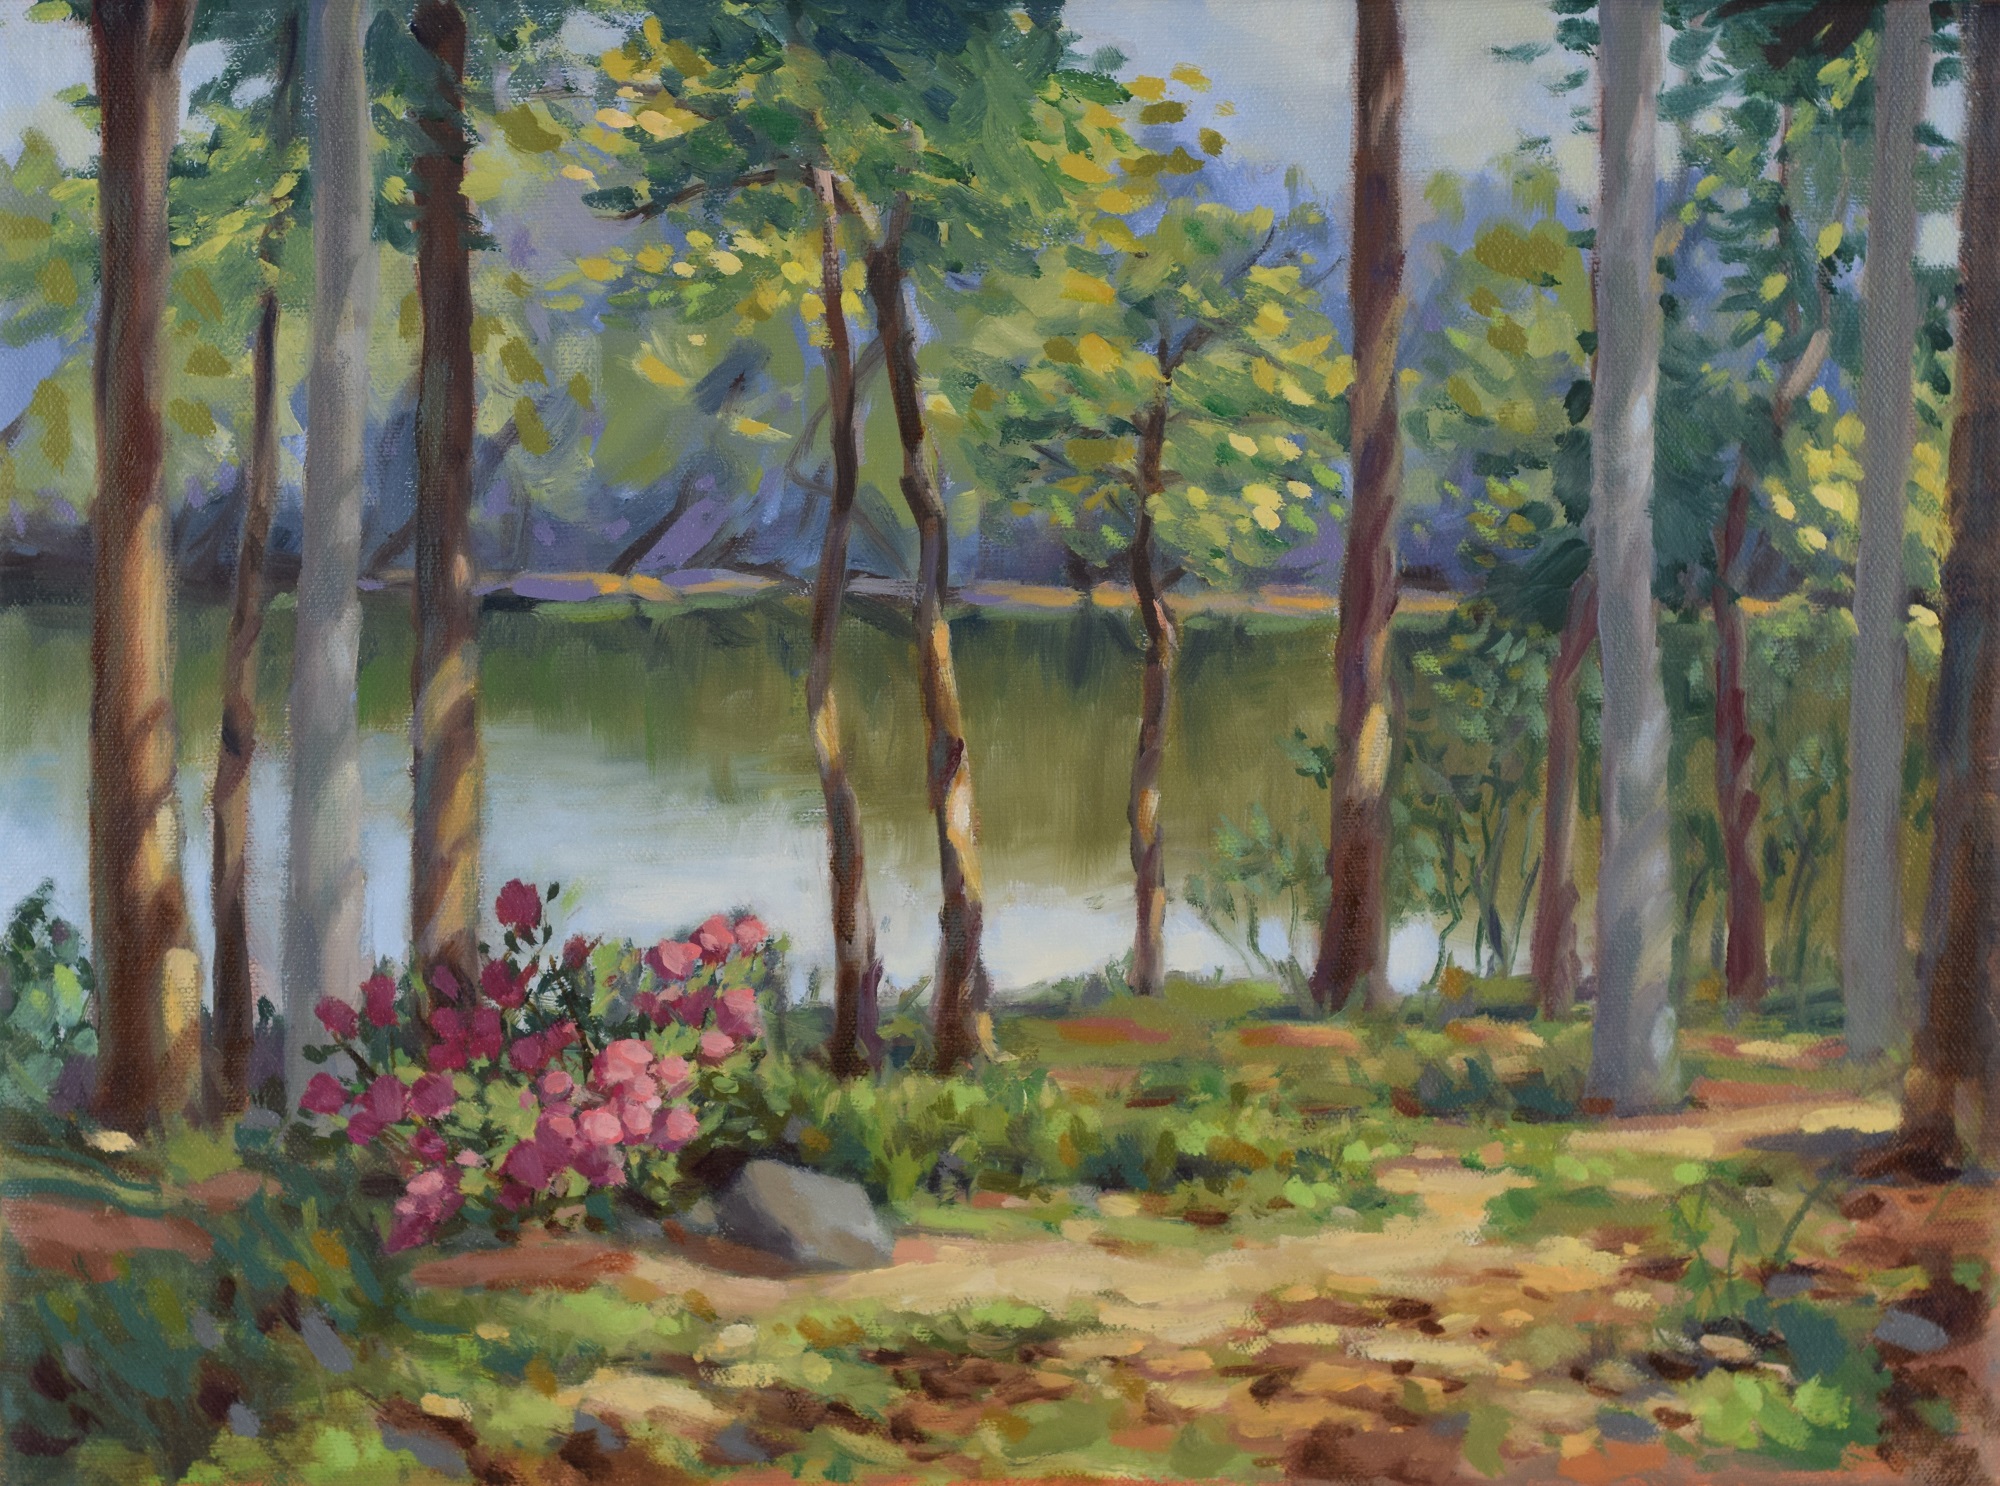 Reservoir Calm, Oil on canvas, 12x16